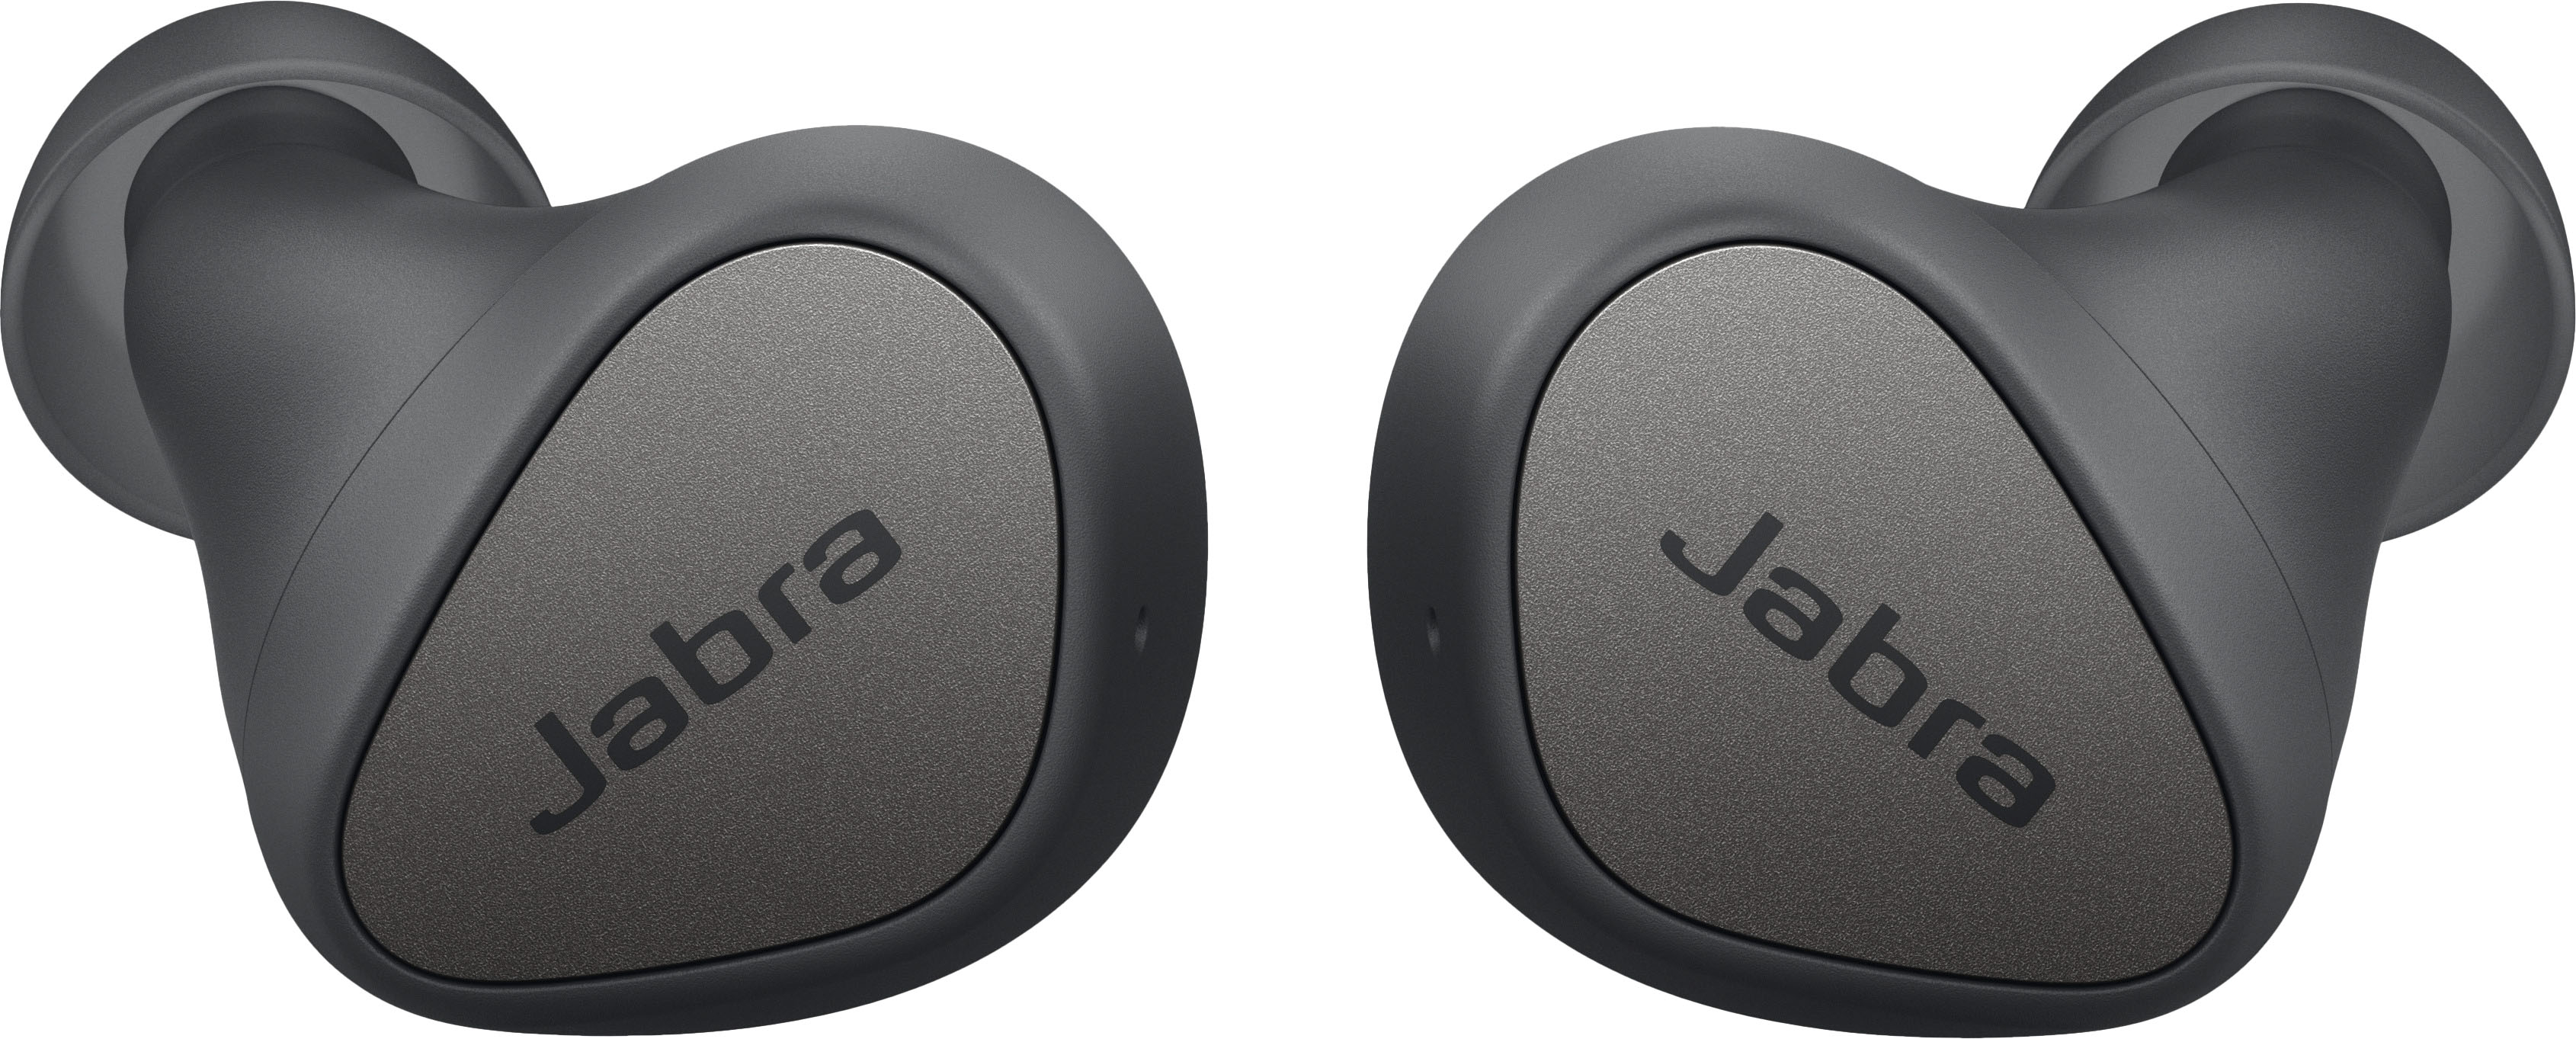 Jabra Elite 3 In Ear Wireless Bluetooth Earbuds 4 Built-in Mic Mono Mode Grey 